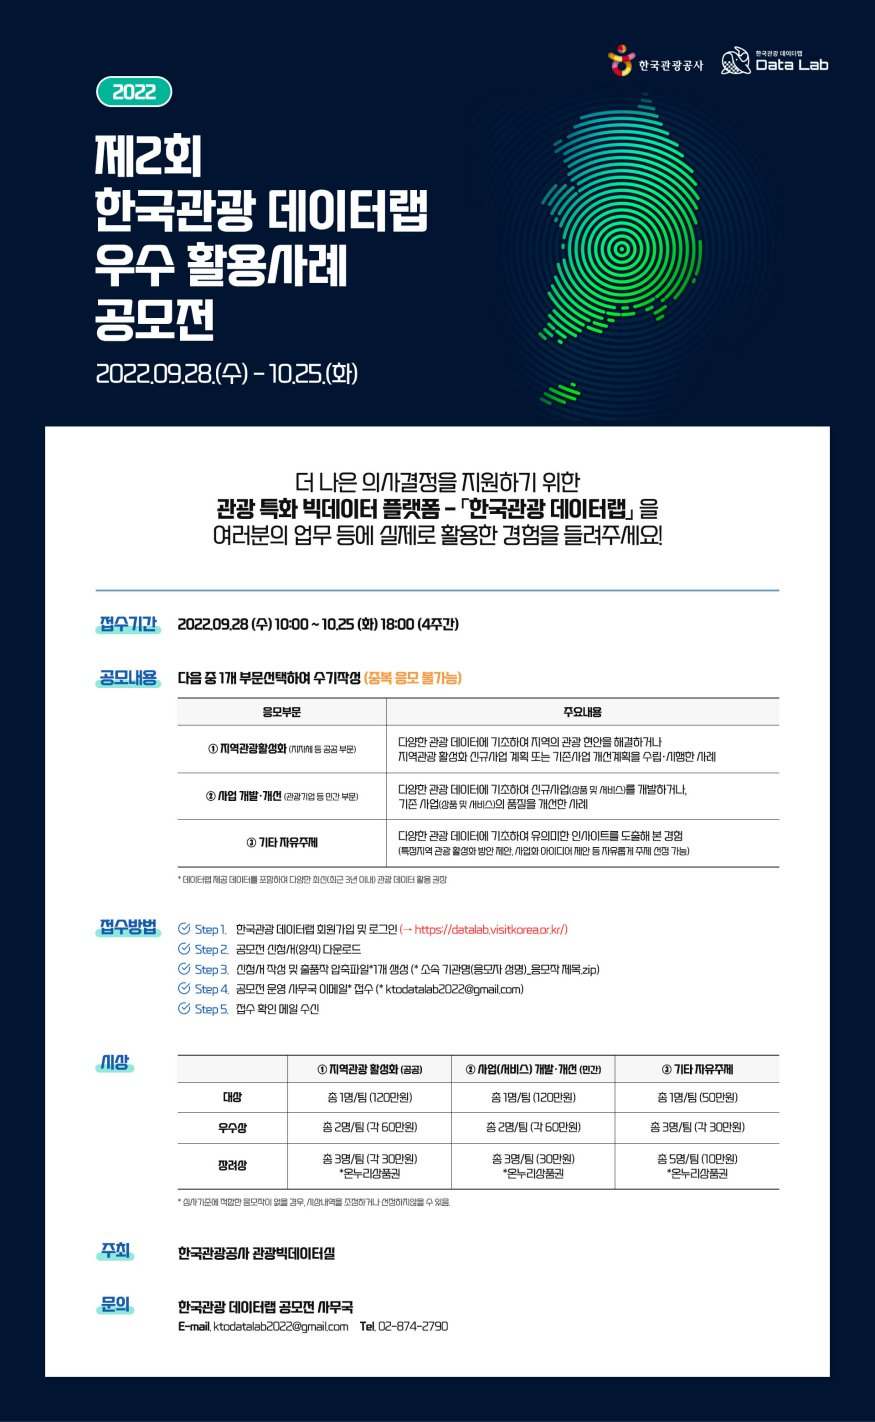 [한국관광공사] (사진) 2022 한국관광 데이터랩 우수 활용사례 공모전 포스터 (1).jpg